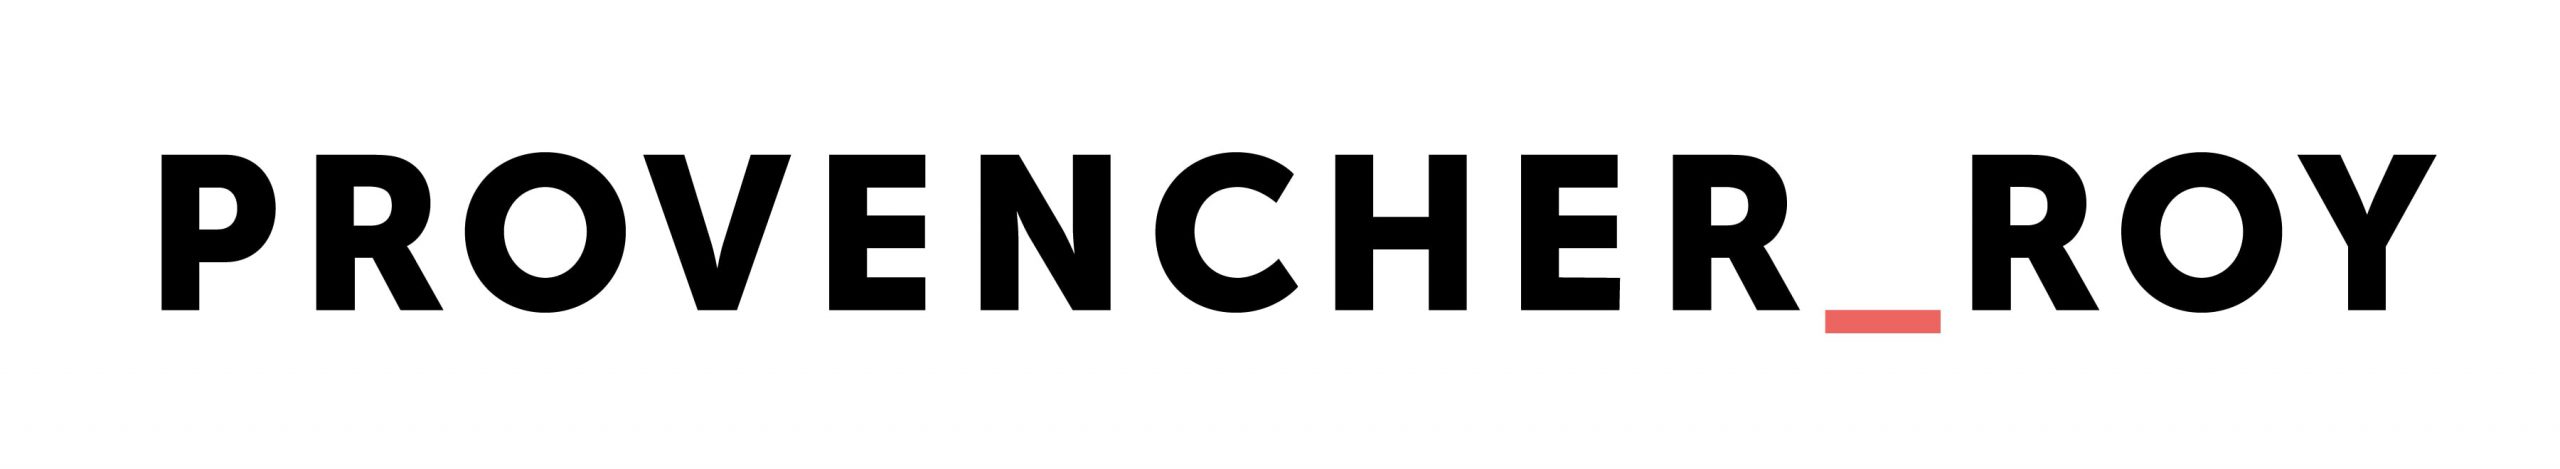 Logo Provencher_Roy